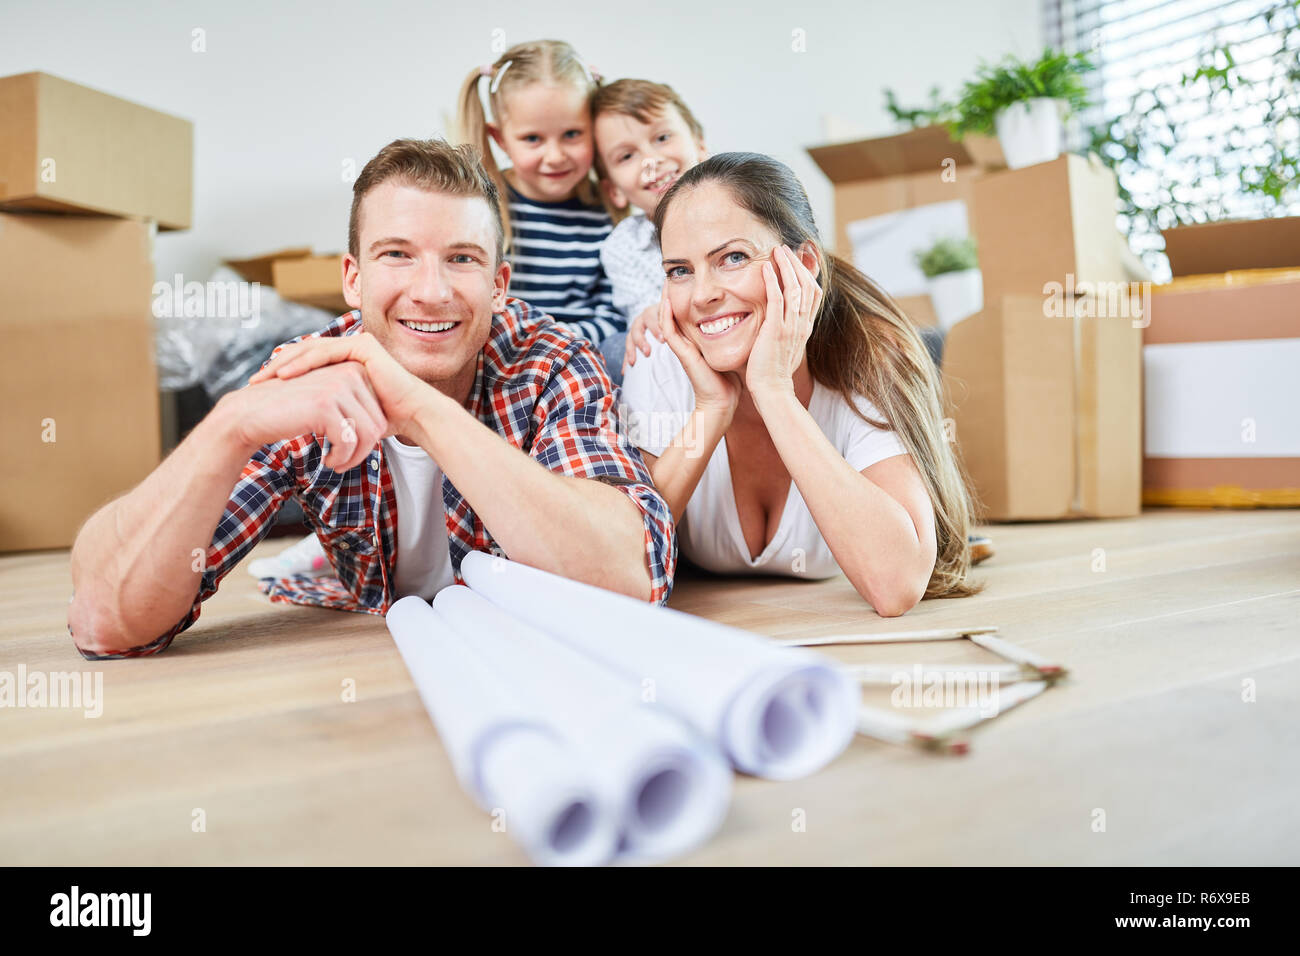 Glückliche Familie und Kinder nach dem Umzug in neuer Wohnung oder Eigenheim Stock Photo